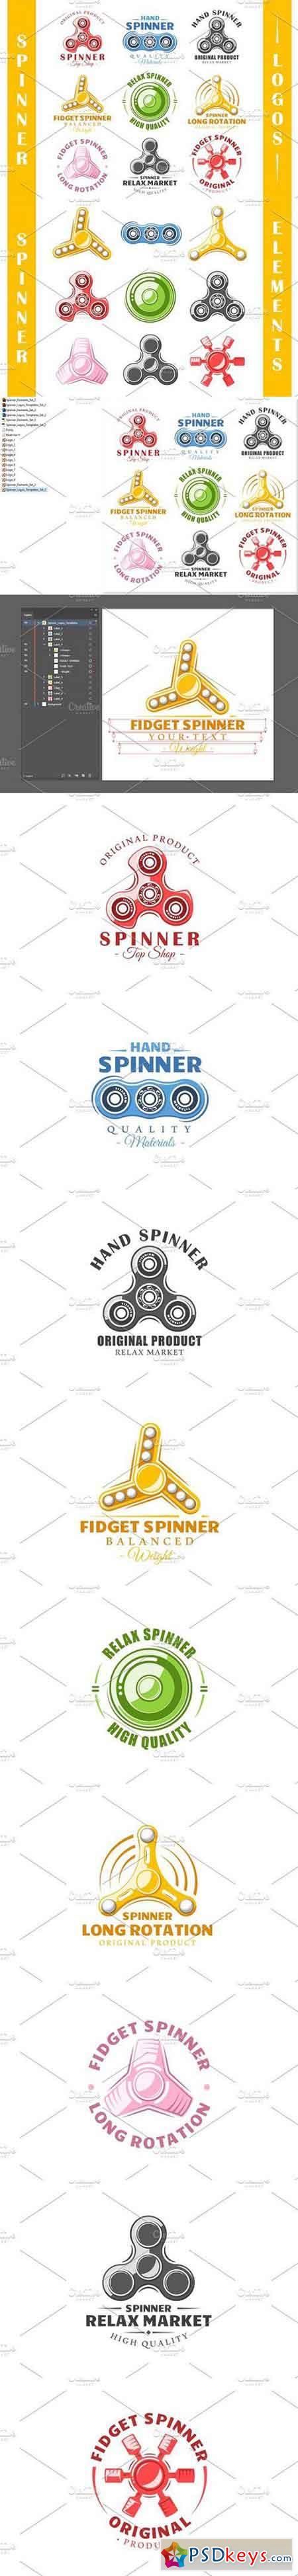 9 Spinner Logos Templates Vol.2 1663377